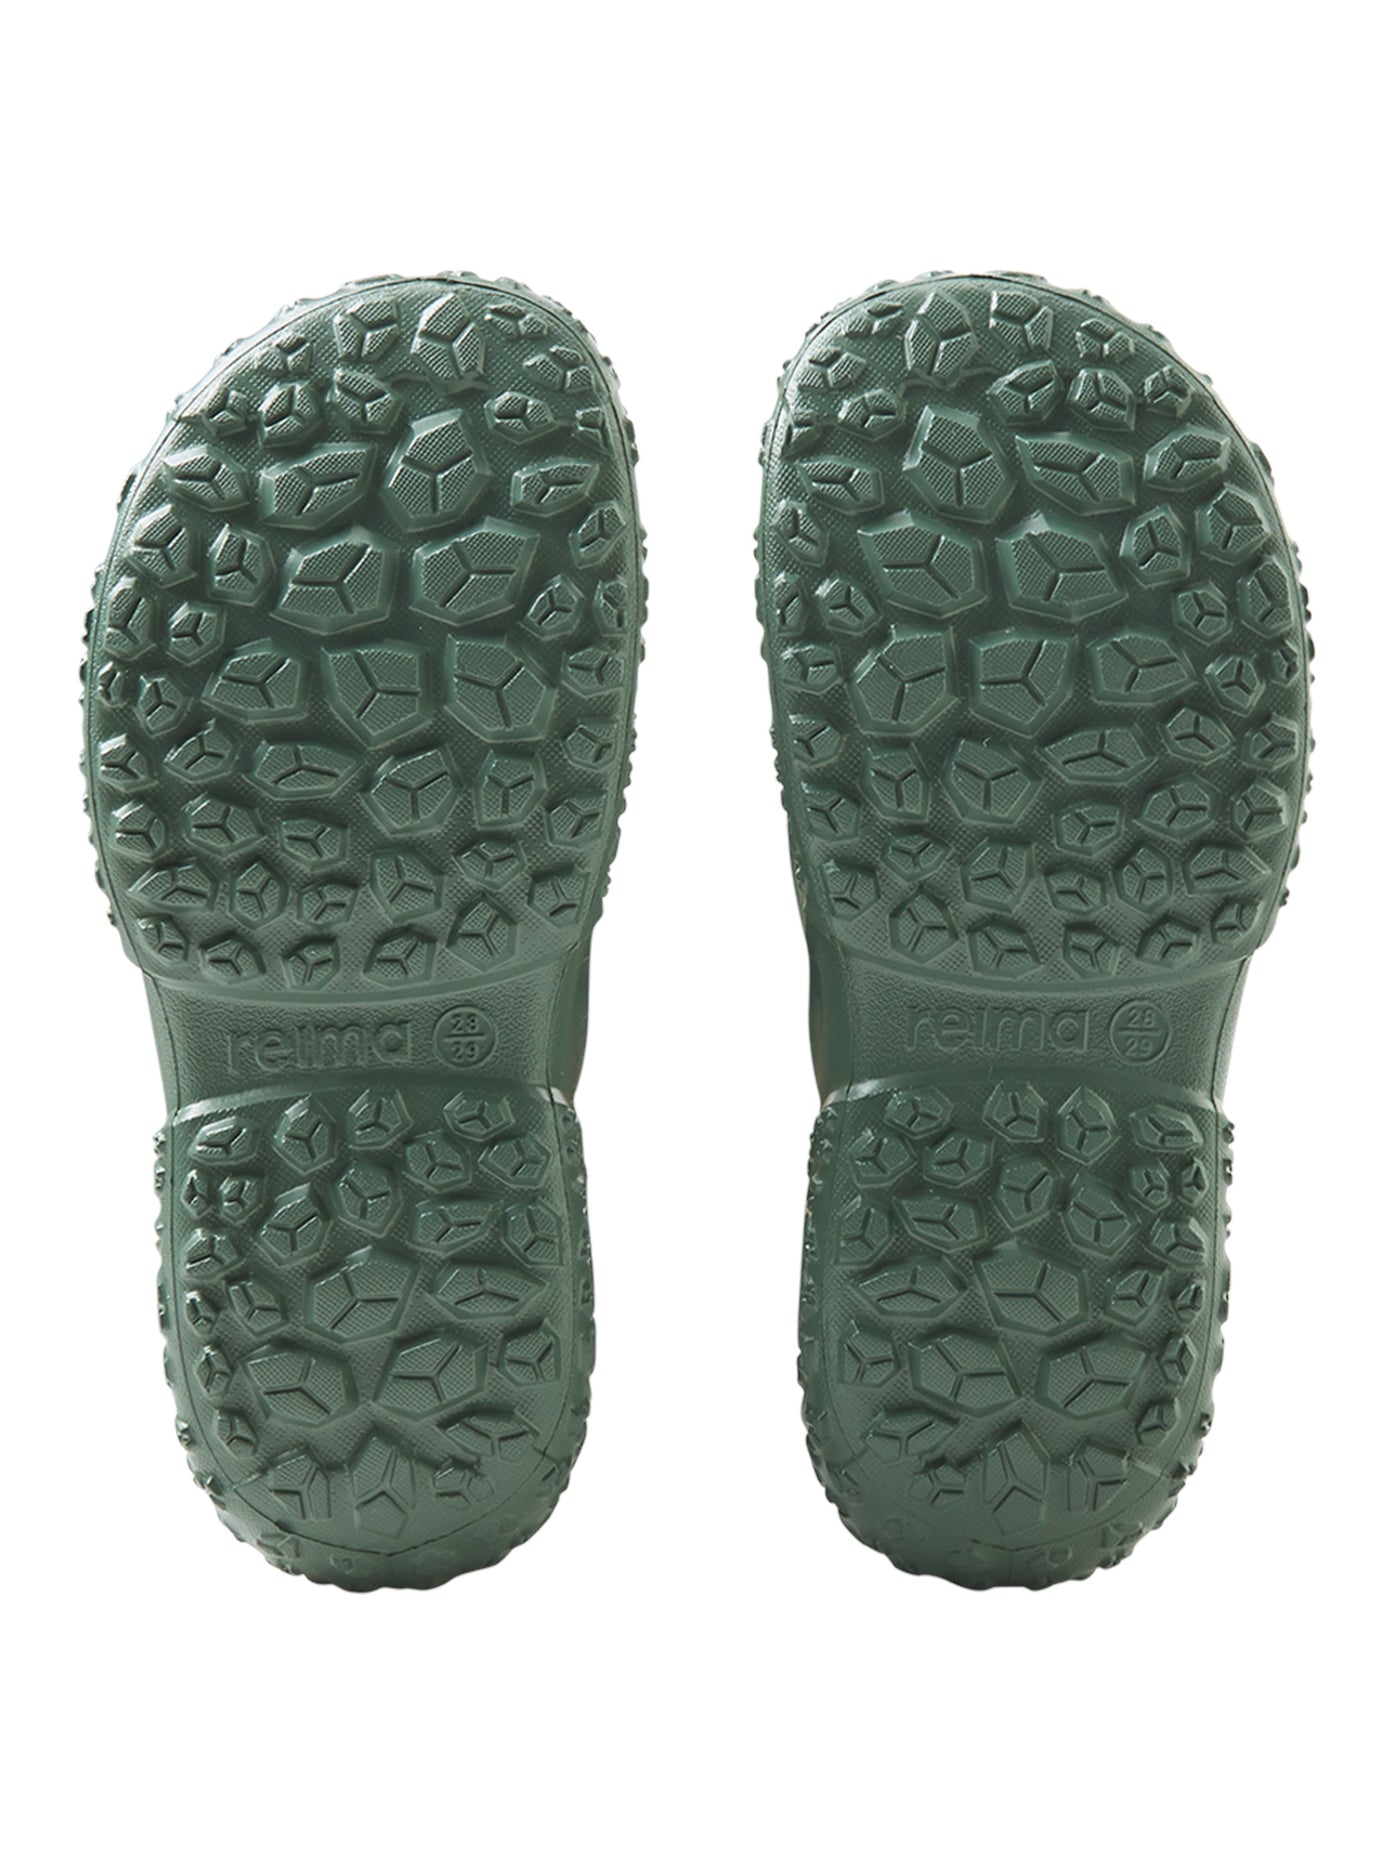 Amfibi Rain Boots - Children's light rubber boots